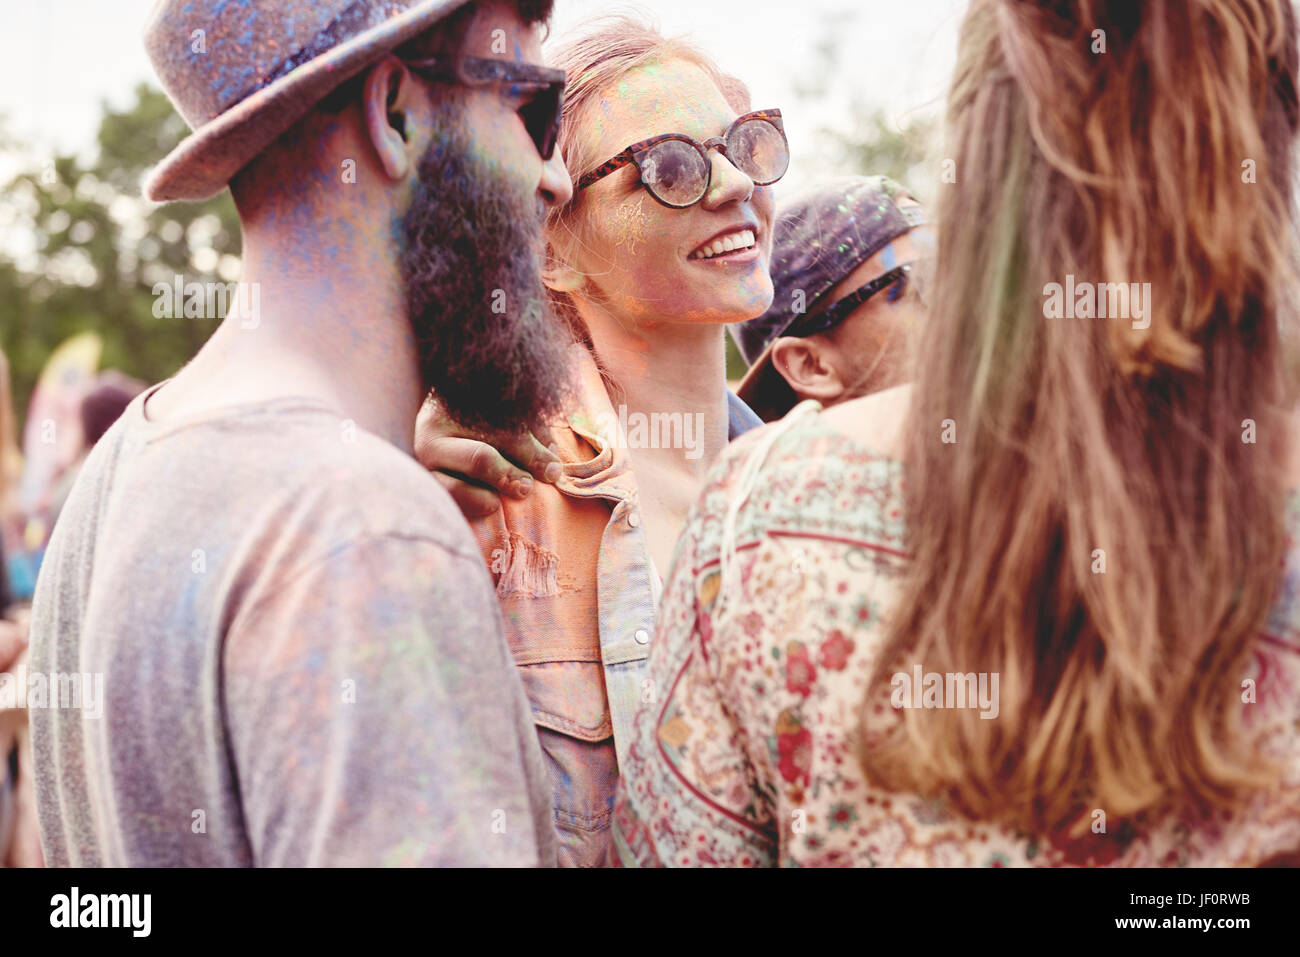 Gruppe von Menschen auf dem Holi-festival Stockfoto